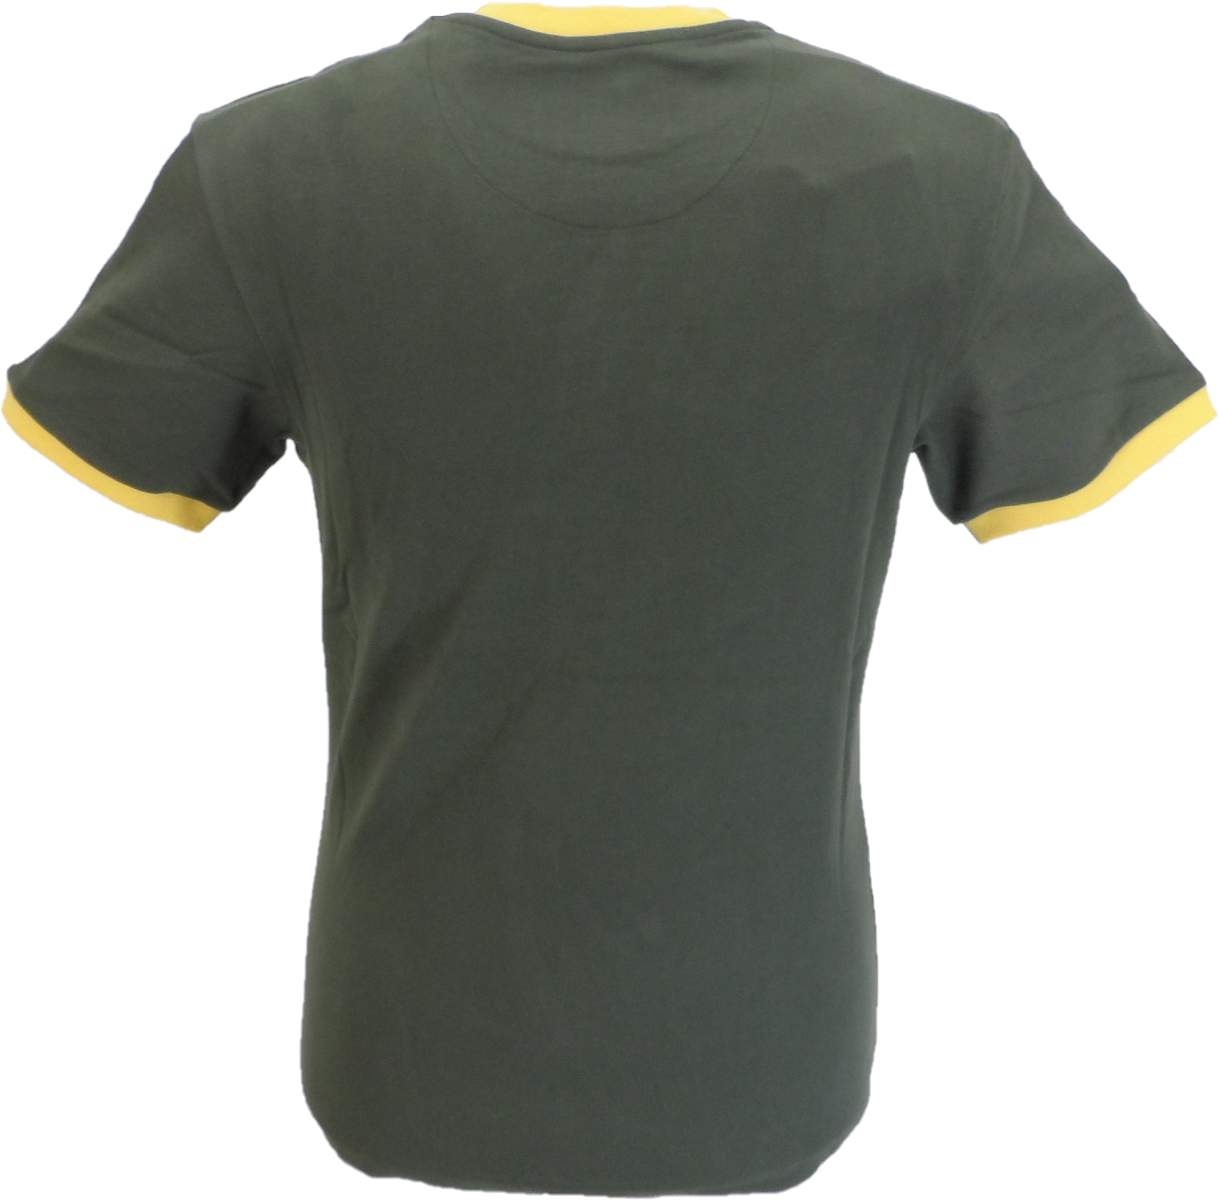 Trojan Records Camiseta verde militar para hombre Spirit of 69 100% algodón color melocotón